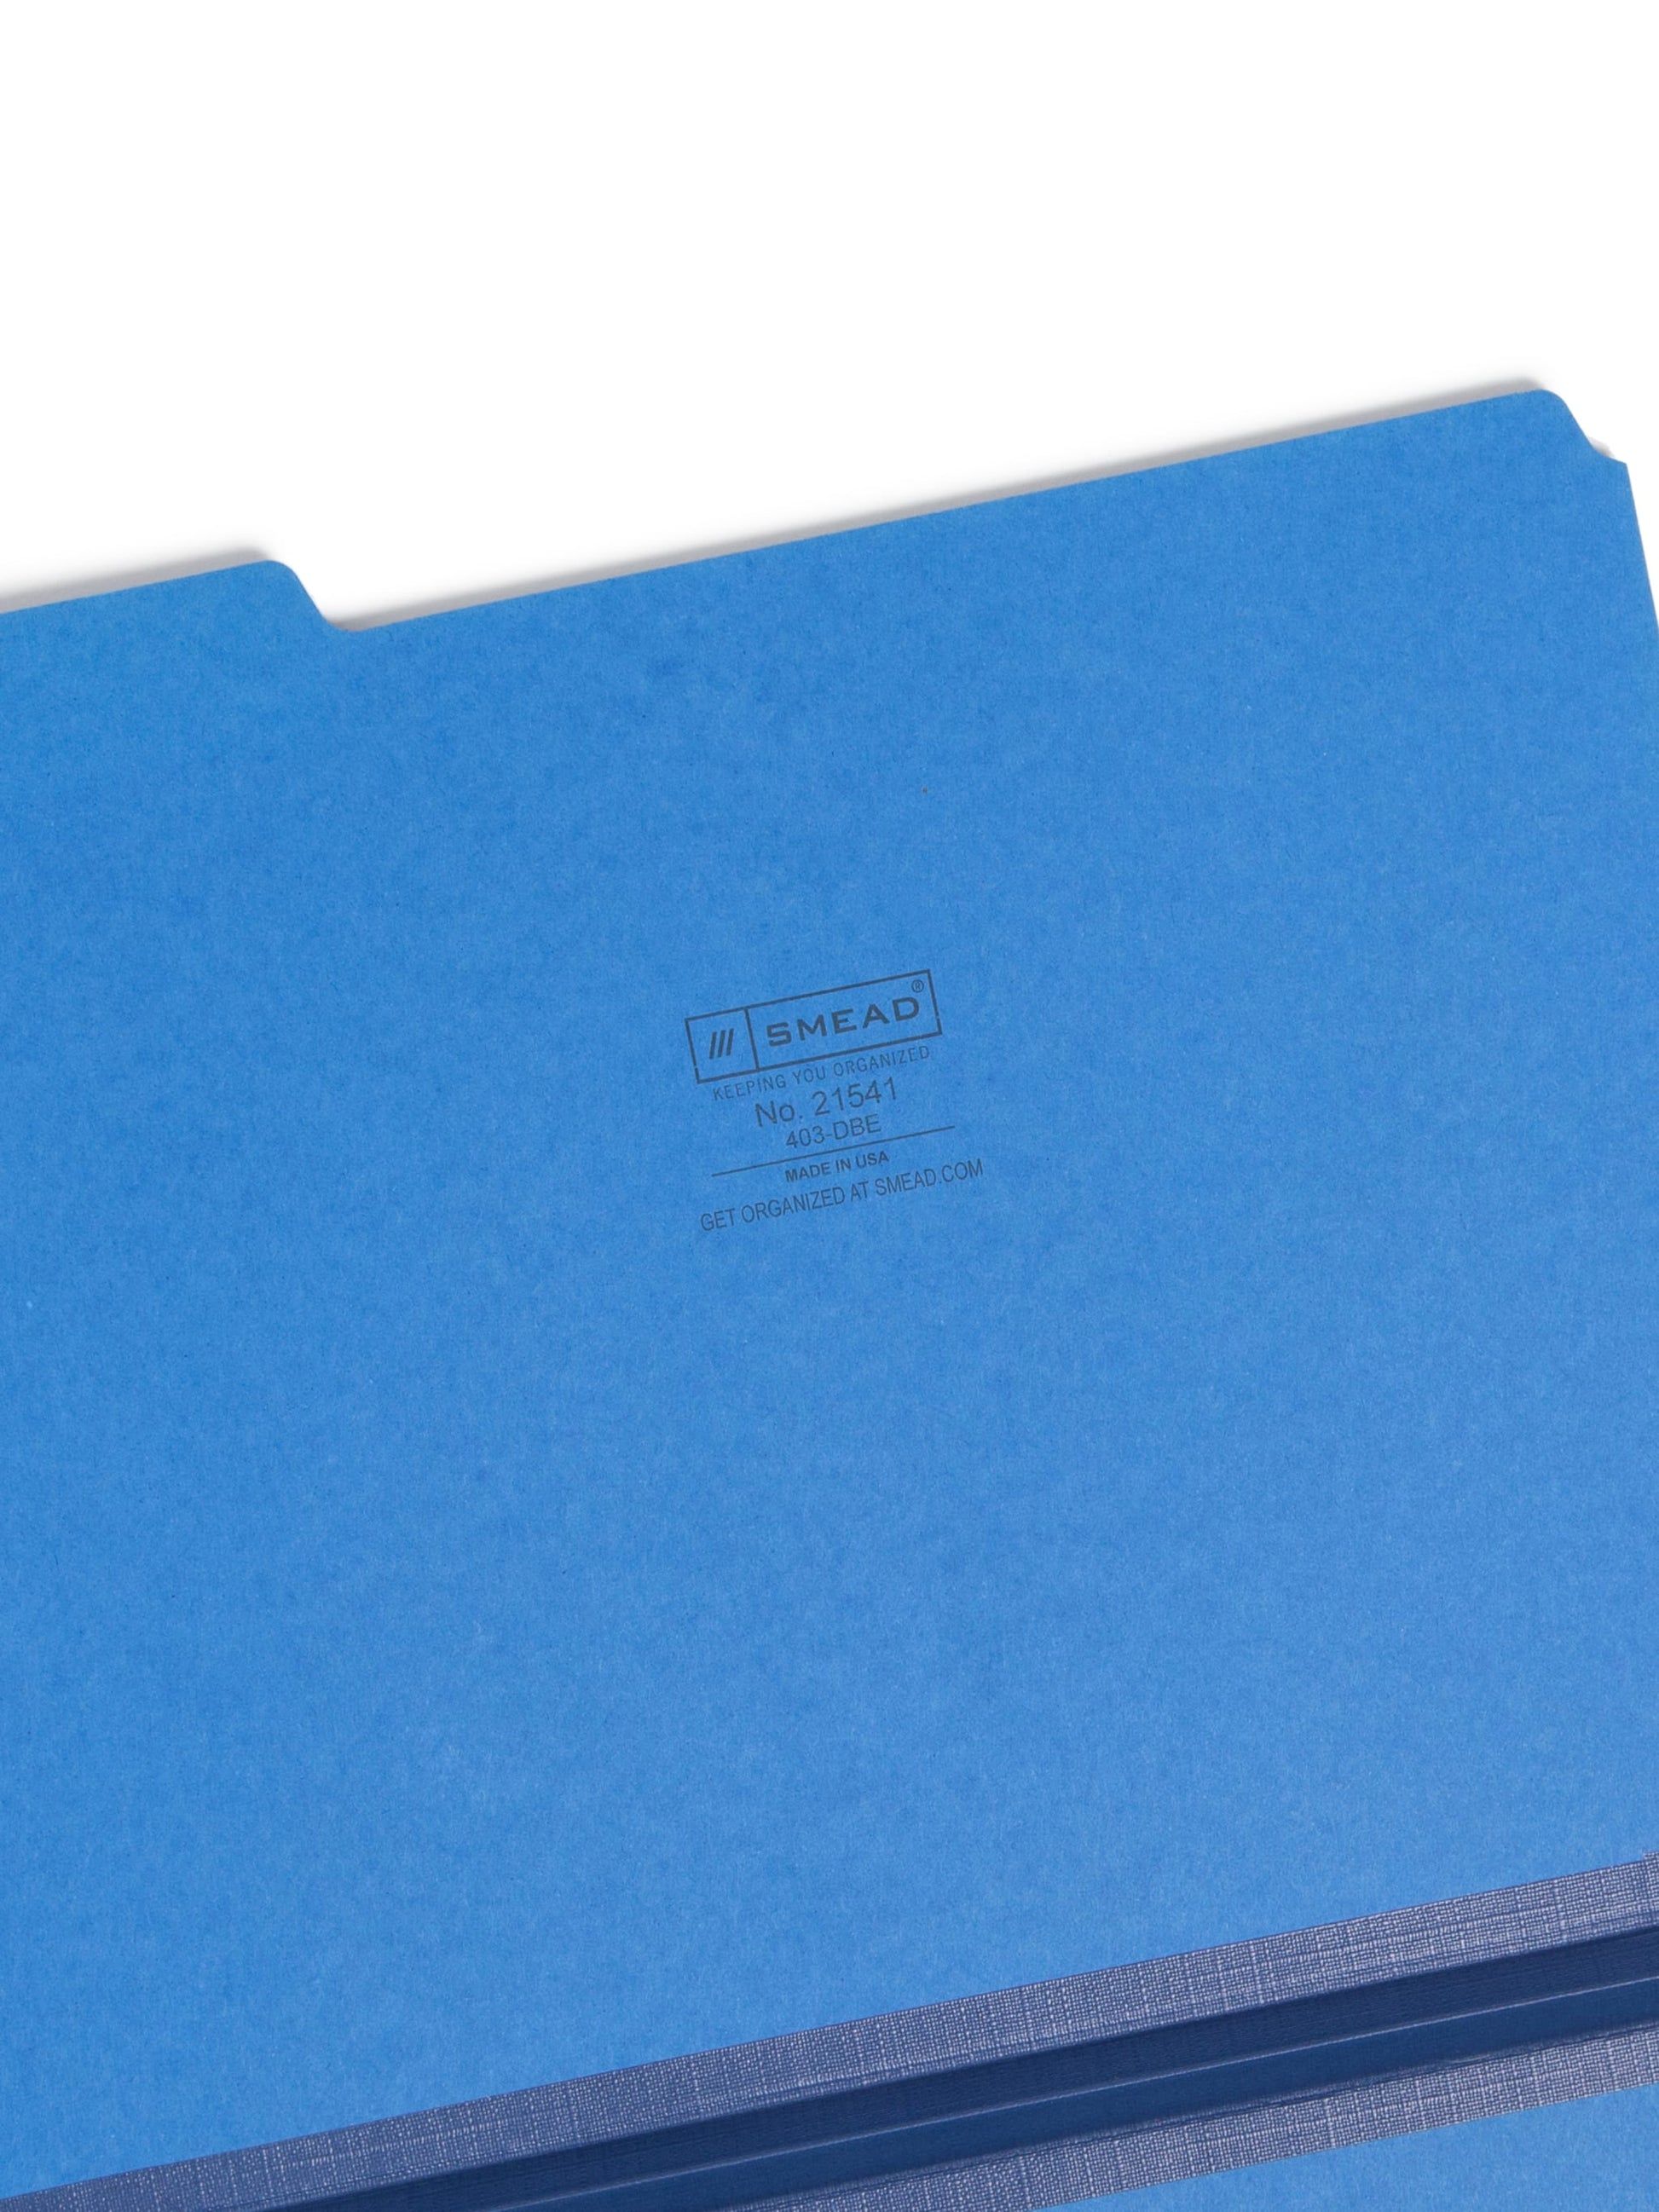 Pressboard File Folder, 1 inch Expansion, 1/3-Cut Tab, Dark Blue Color, Letter Size, Set of 25, 086486215411